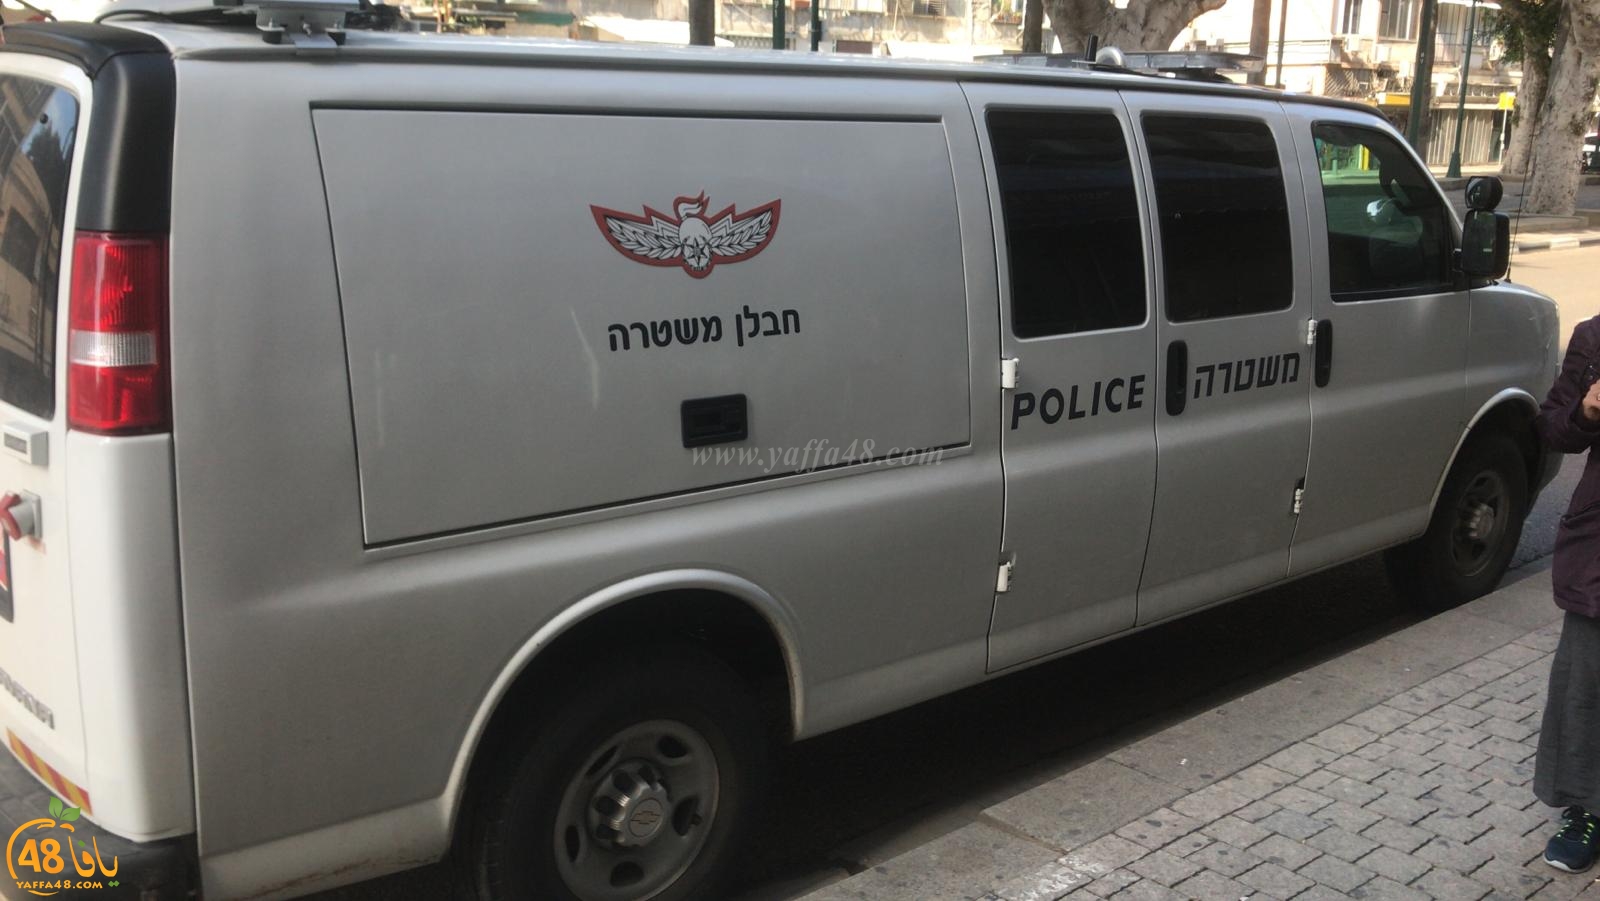  بالصور: الشرطة تُغلق شارع شديروت يروشلايم بيافا لمعالجة جسم مشبوه 